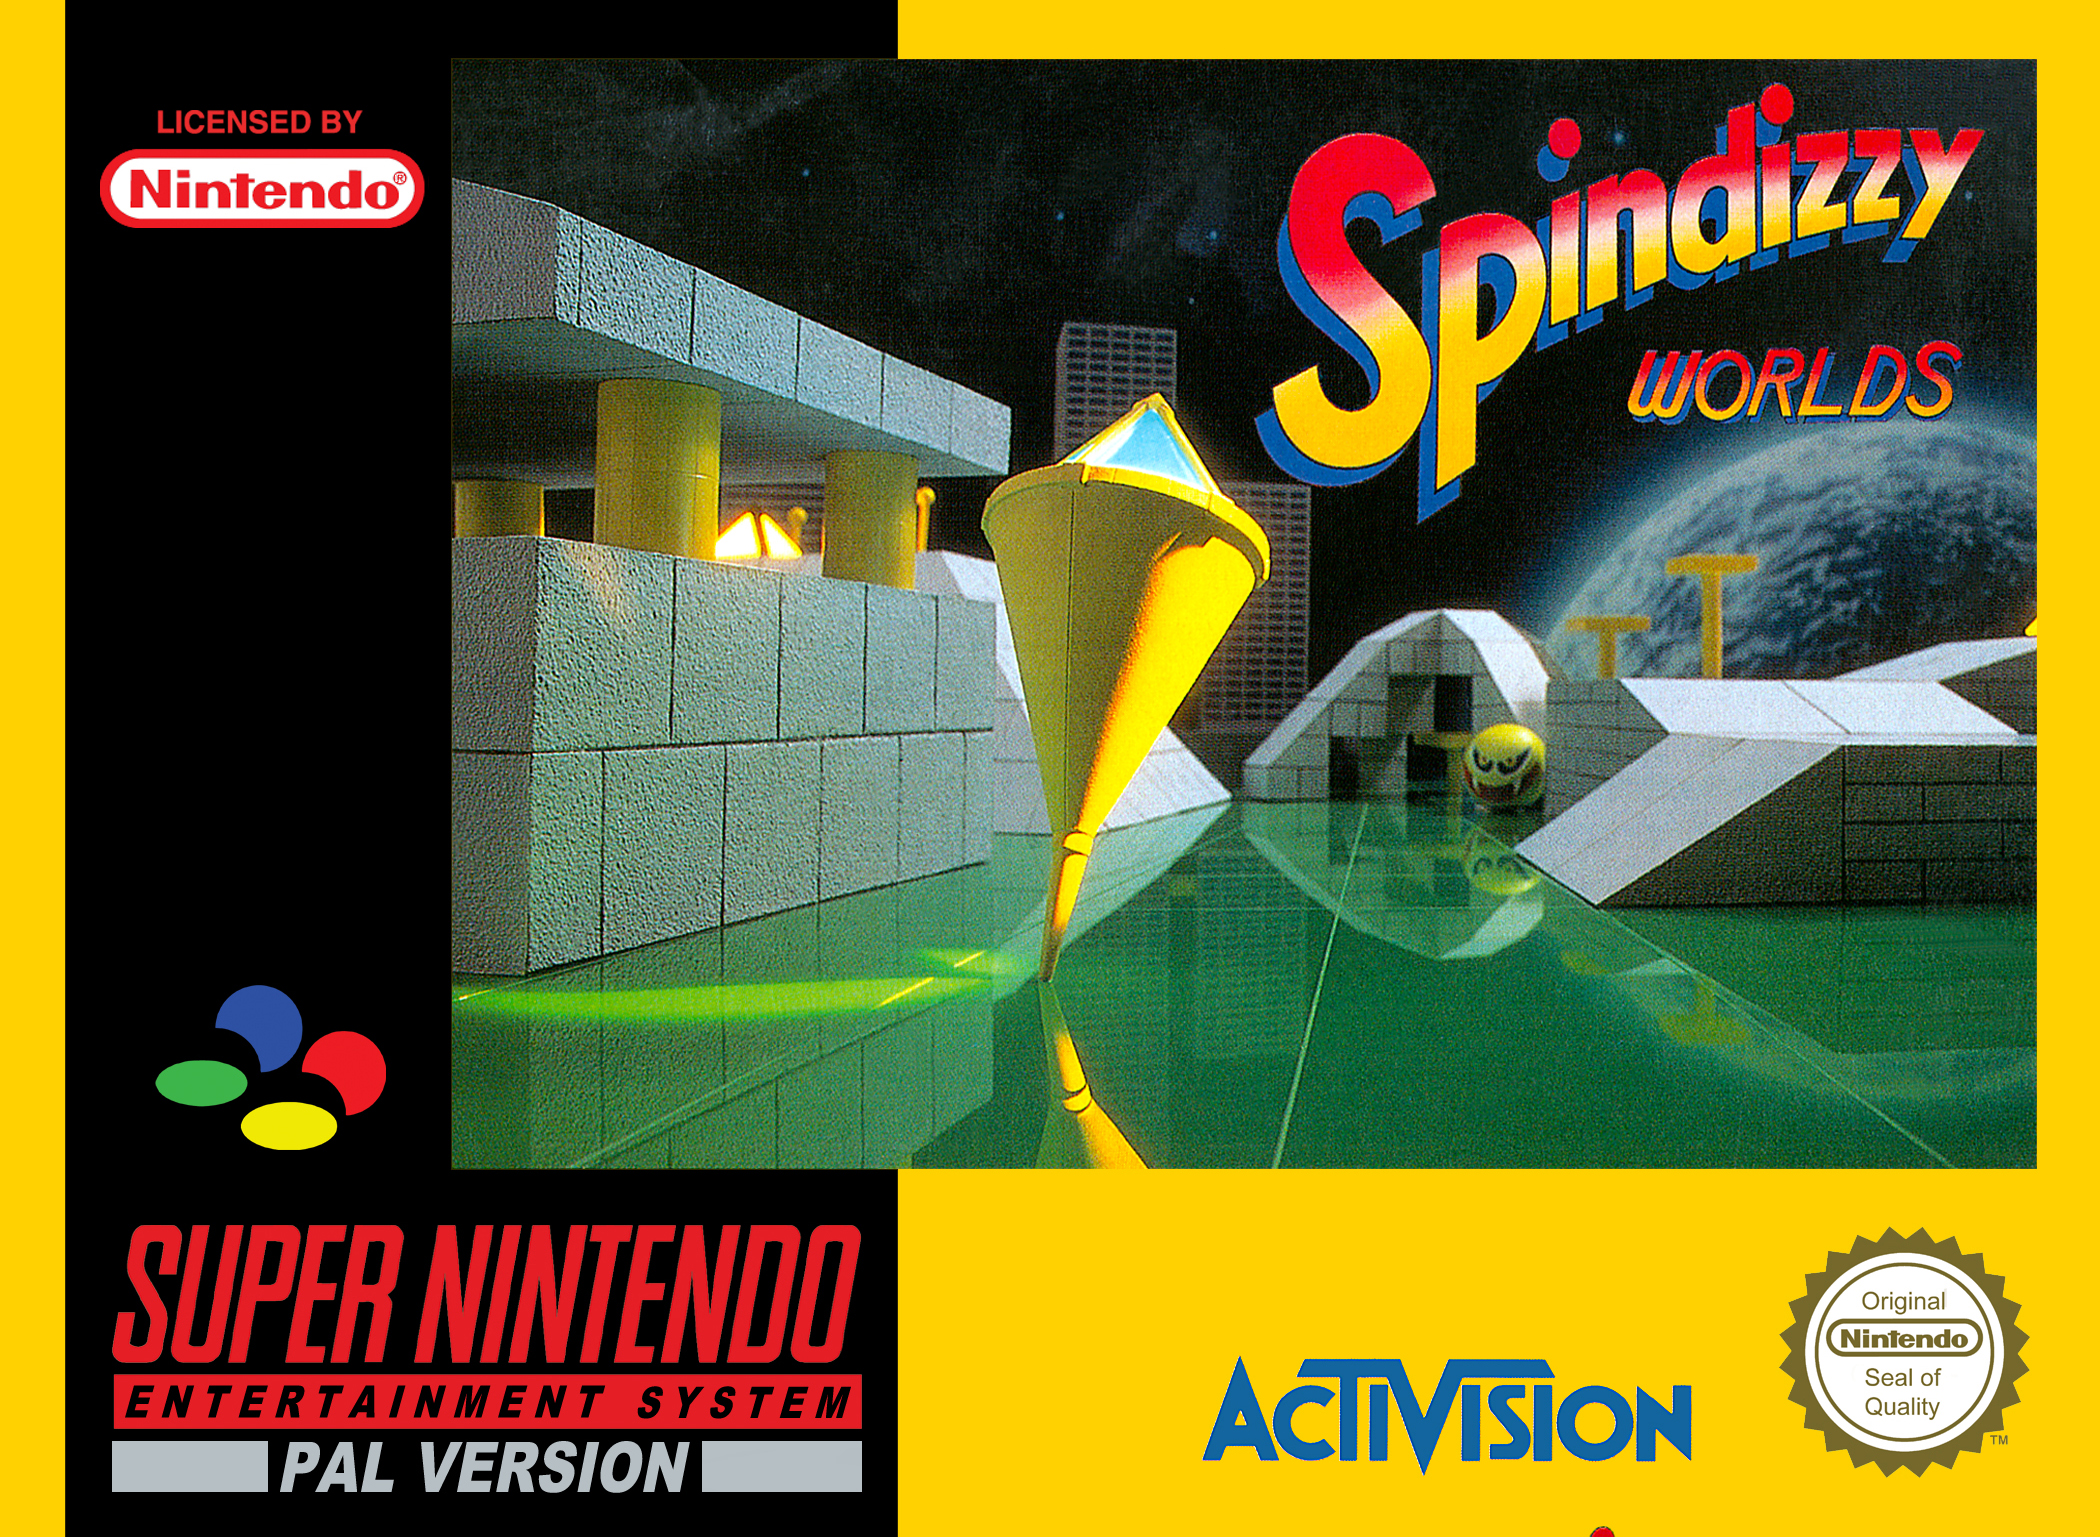 Spindizzy Worlds (Csak a kazetta) - Super Nintendo Entertainment System Játékok